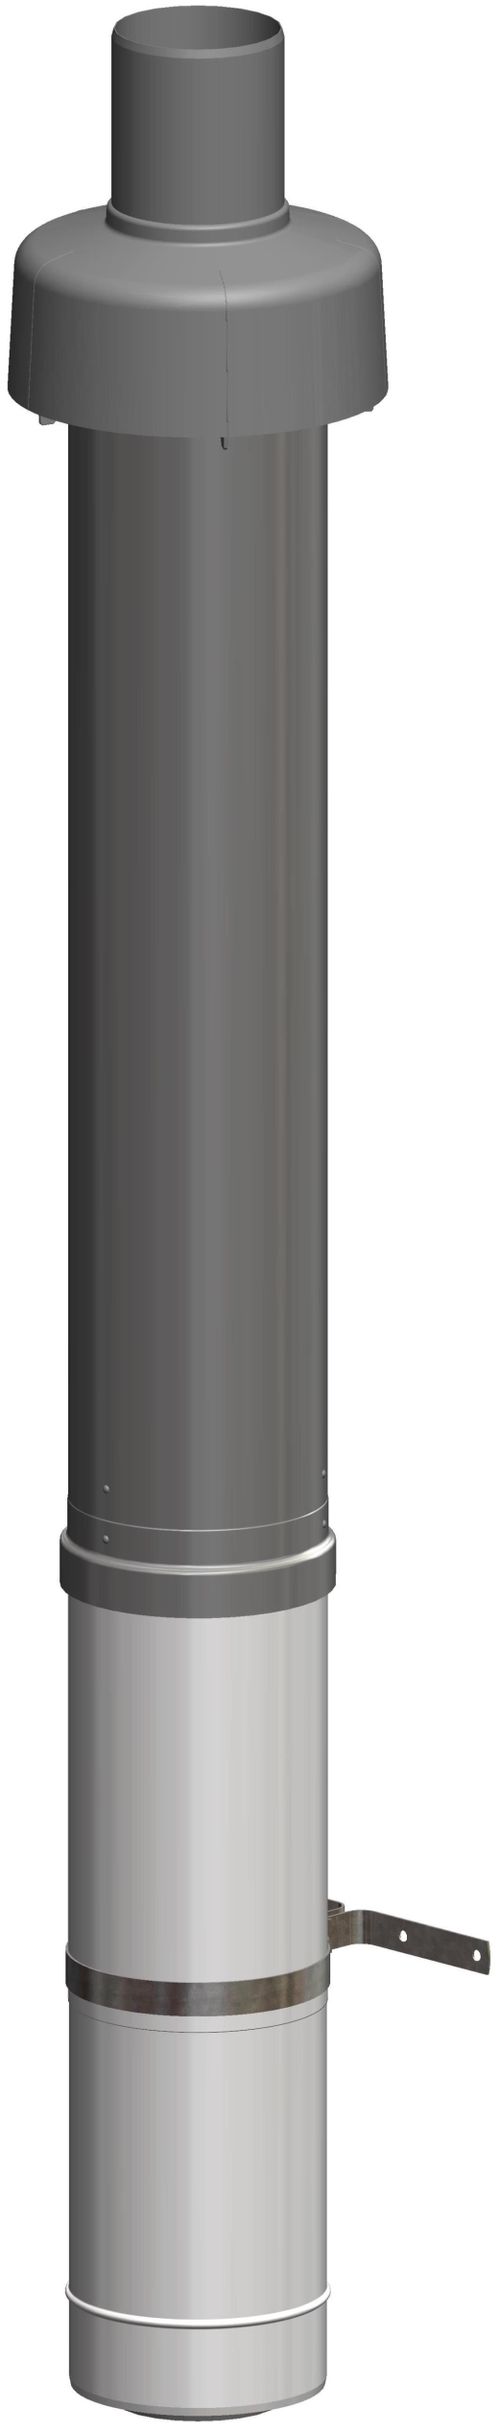 ATEC-Dachdurchfuehrung-DN-100-150-1100mm-schwarz-inkl-Befestigungsschelle-2460